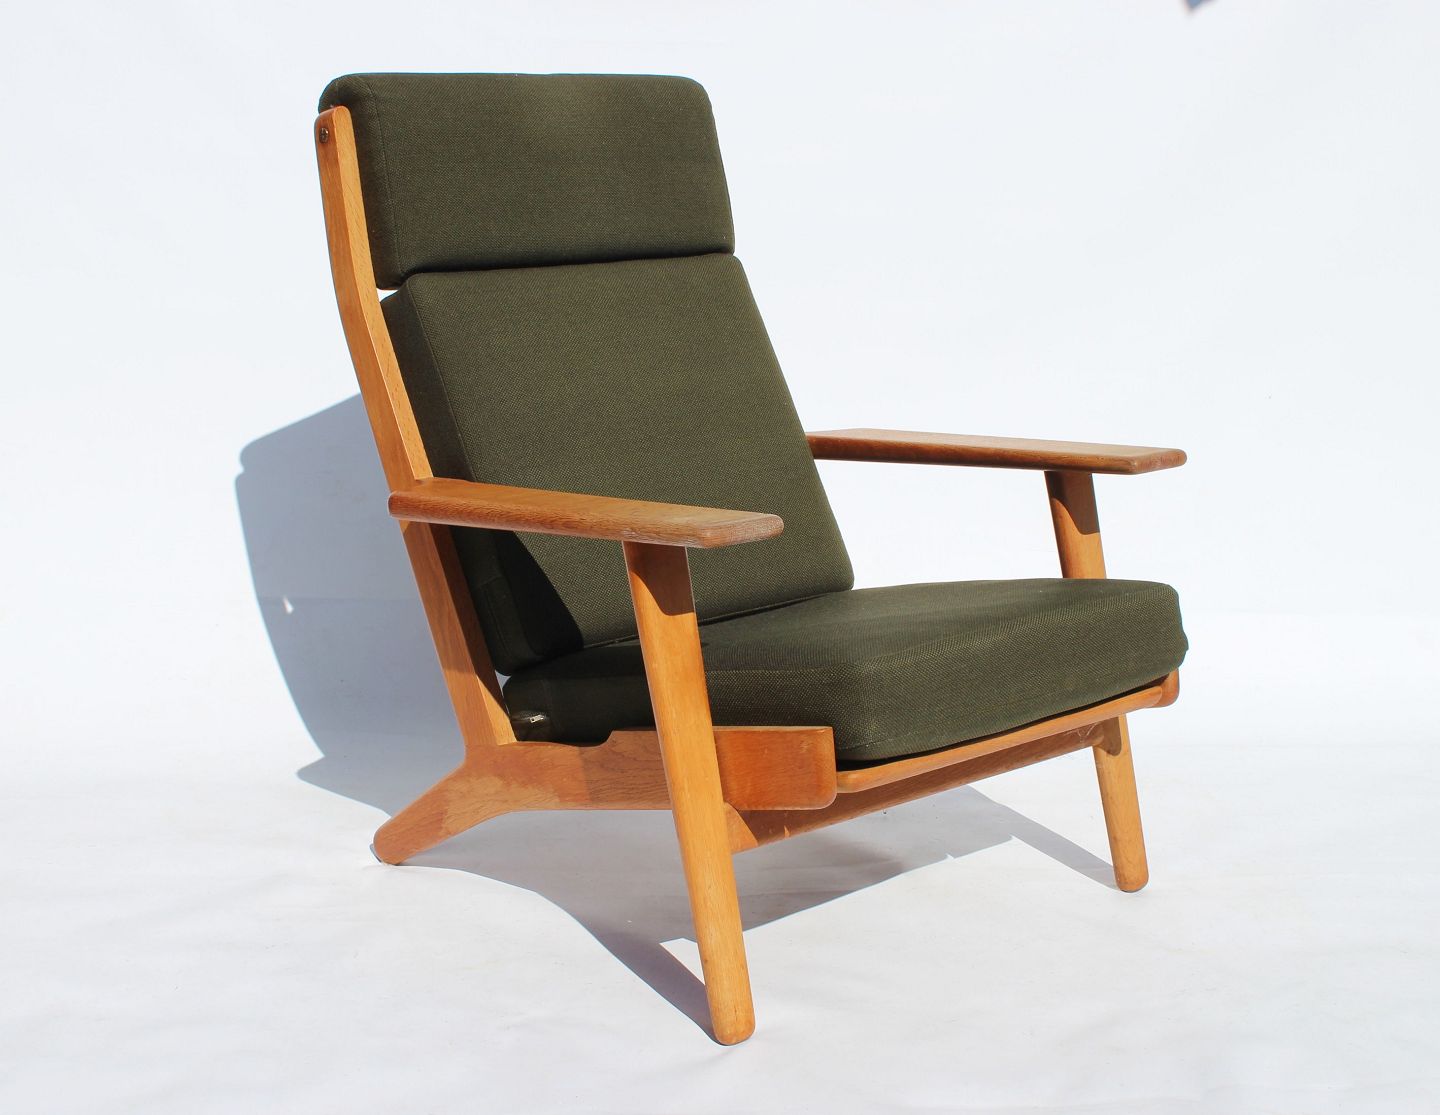 Lænestol med høj ryg, model GE290A, af Hans J. Wegner og Getama 1960erne. * - Osted & Design